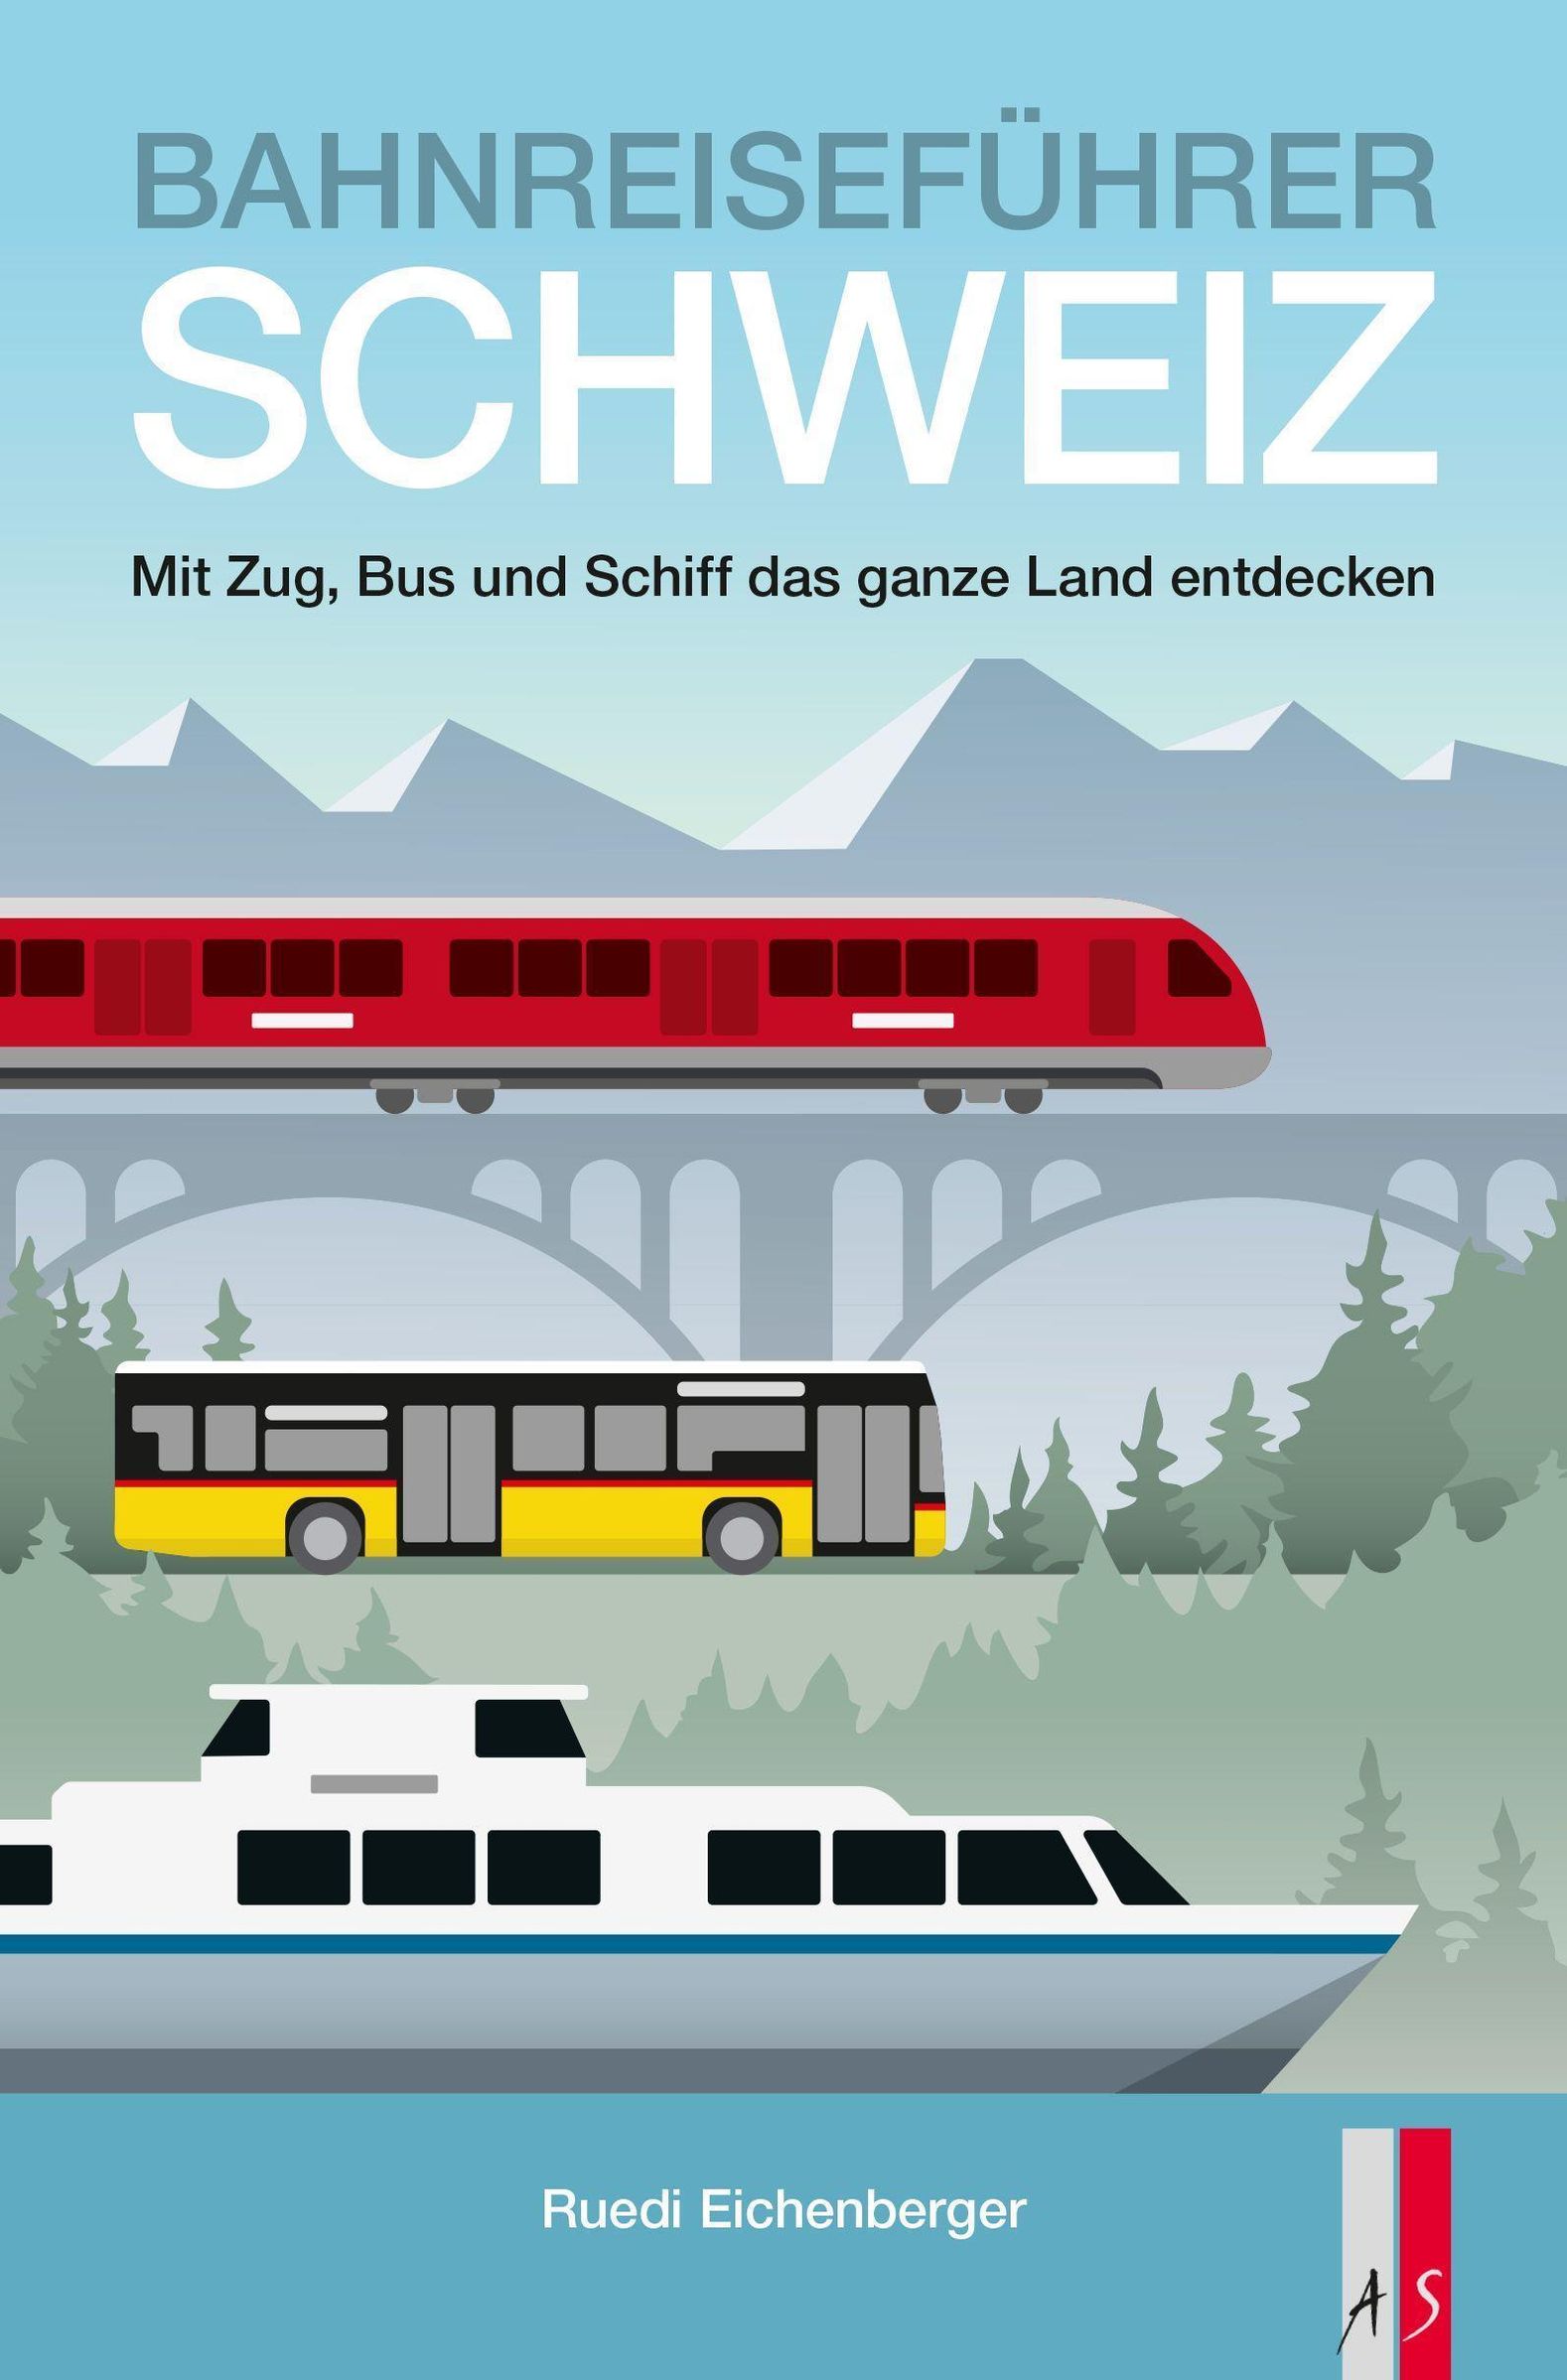 Bahnreiseführer Schweiz Buch versandkostenfrei bei Weltbild.ch bestellen